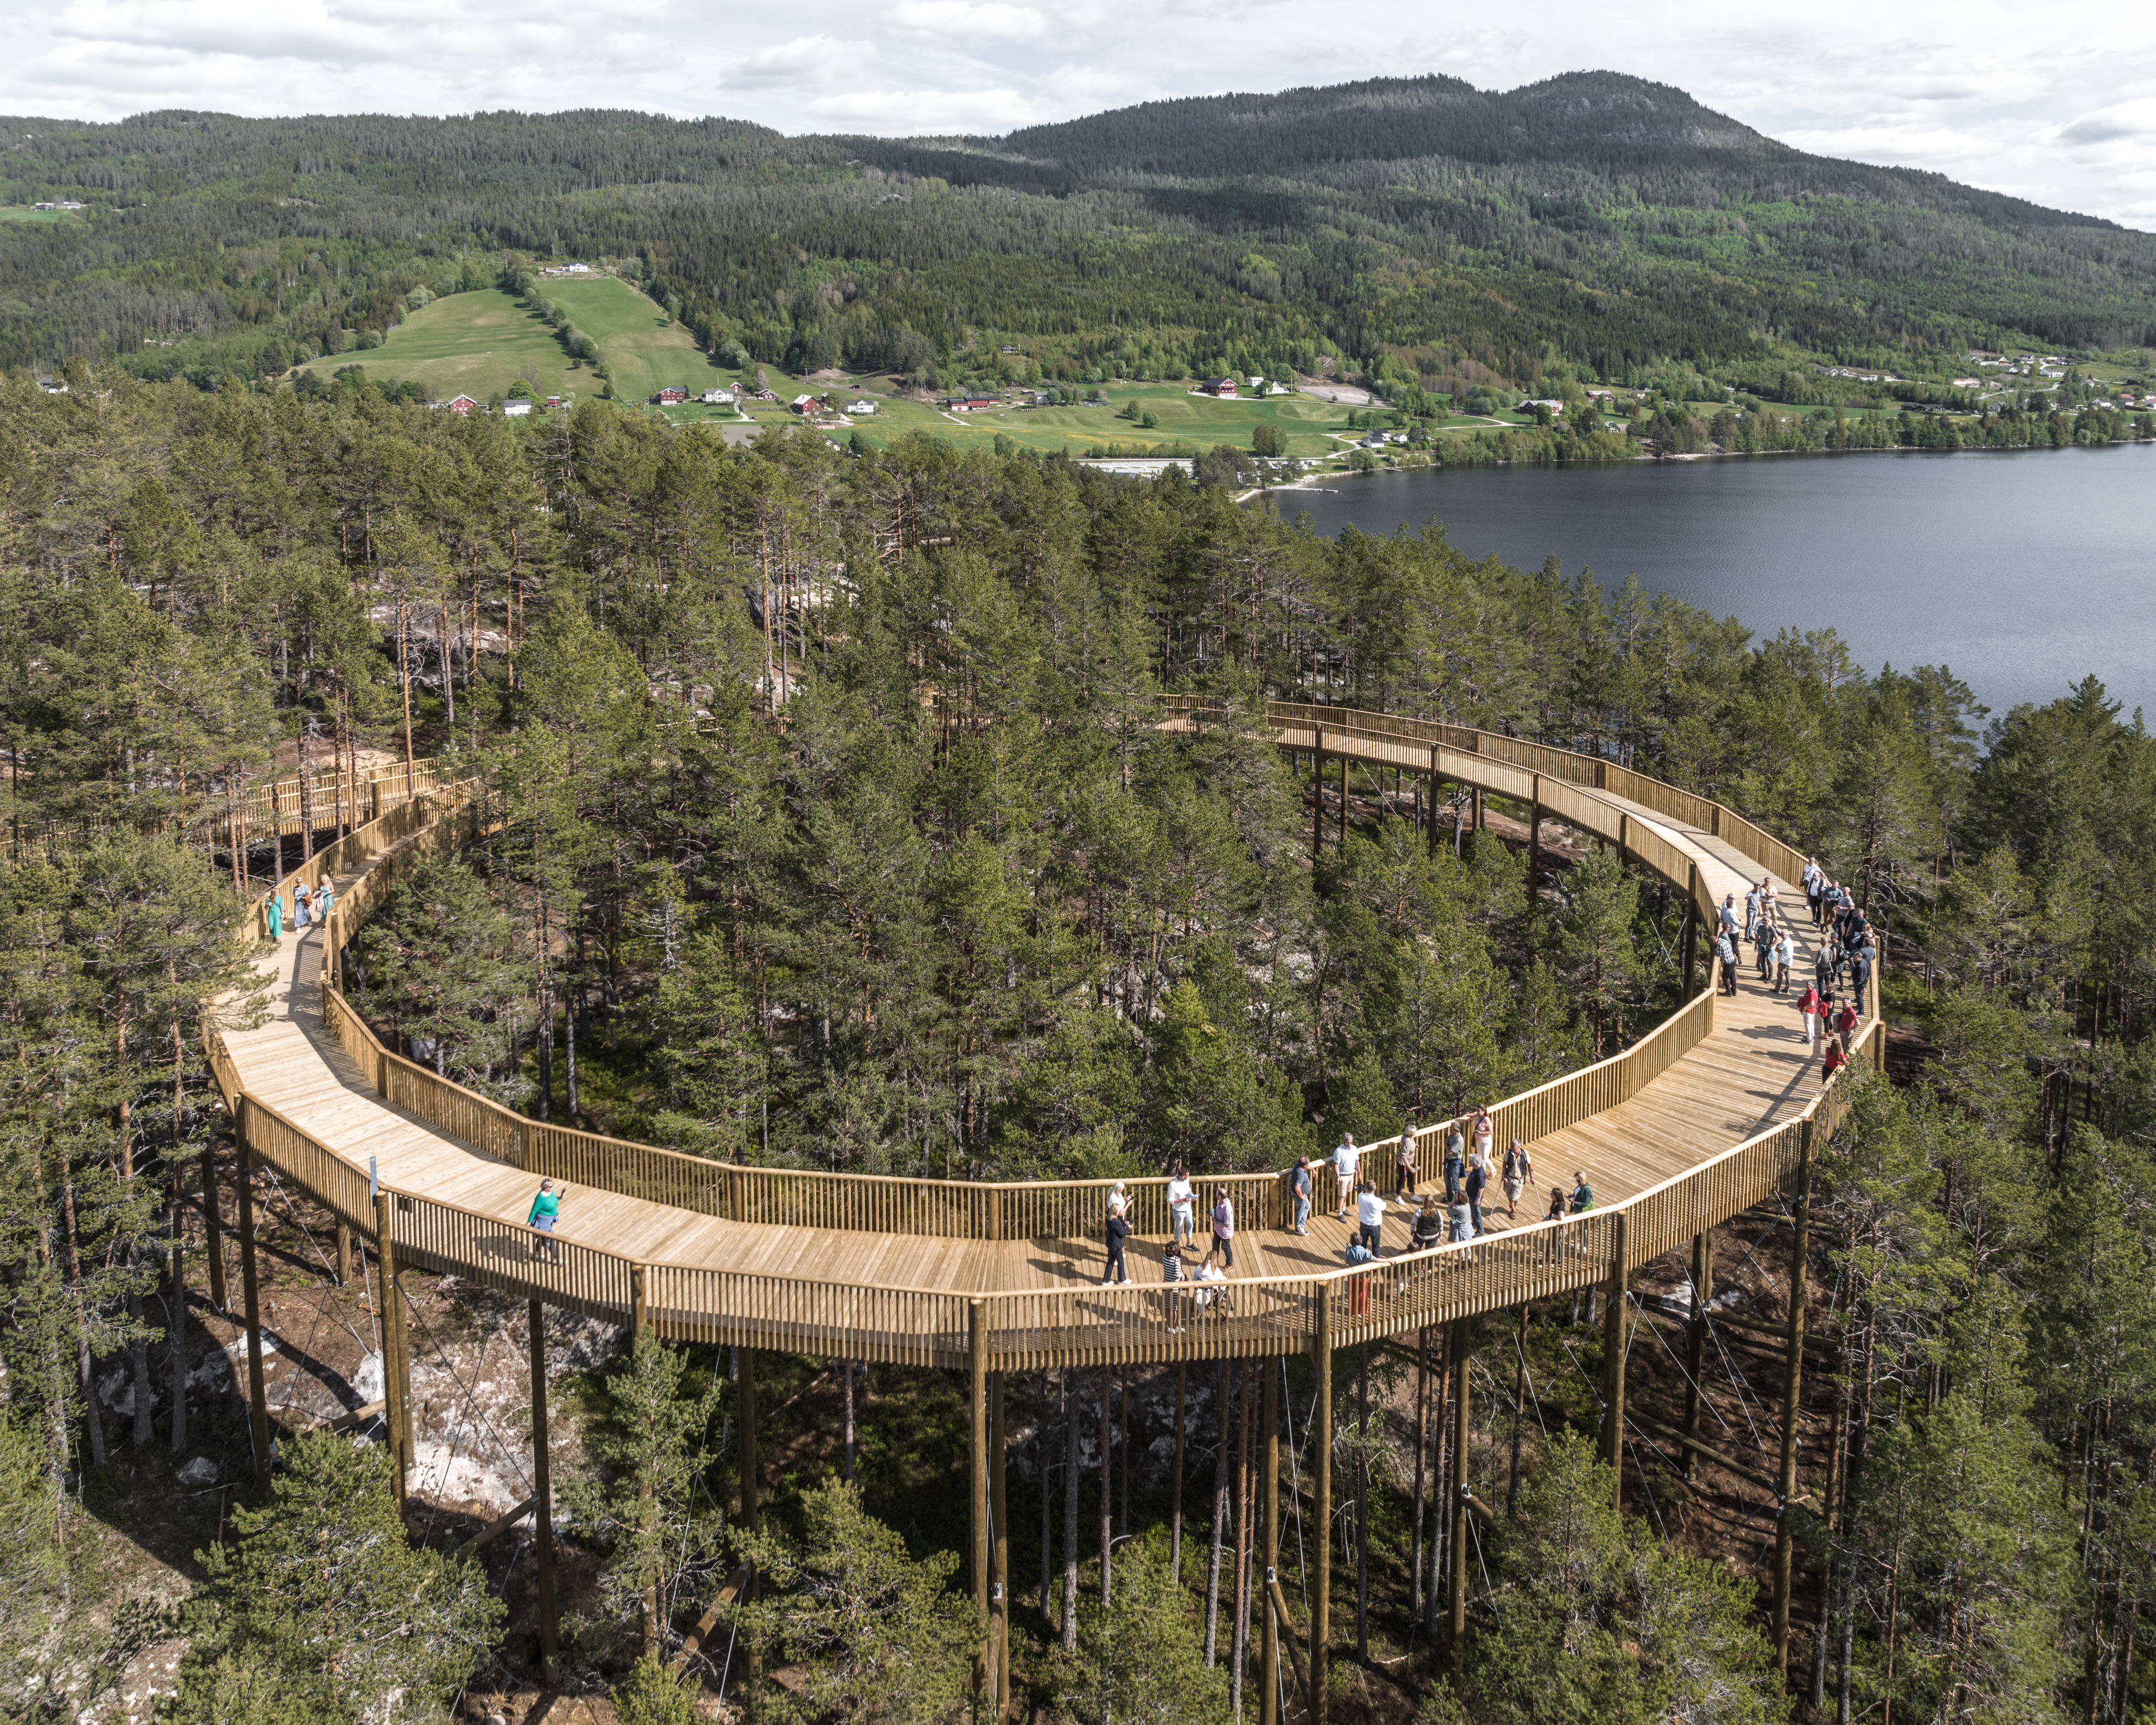 Med diameter på 45 meter og høgd på 16 meter er utssynssirkelen på toppen av Tretoppvegen imponerande, både som konstruksjon og attraksjon. Foto: Rasmus Hjortshøj